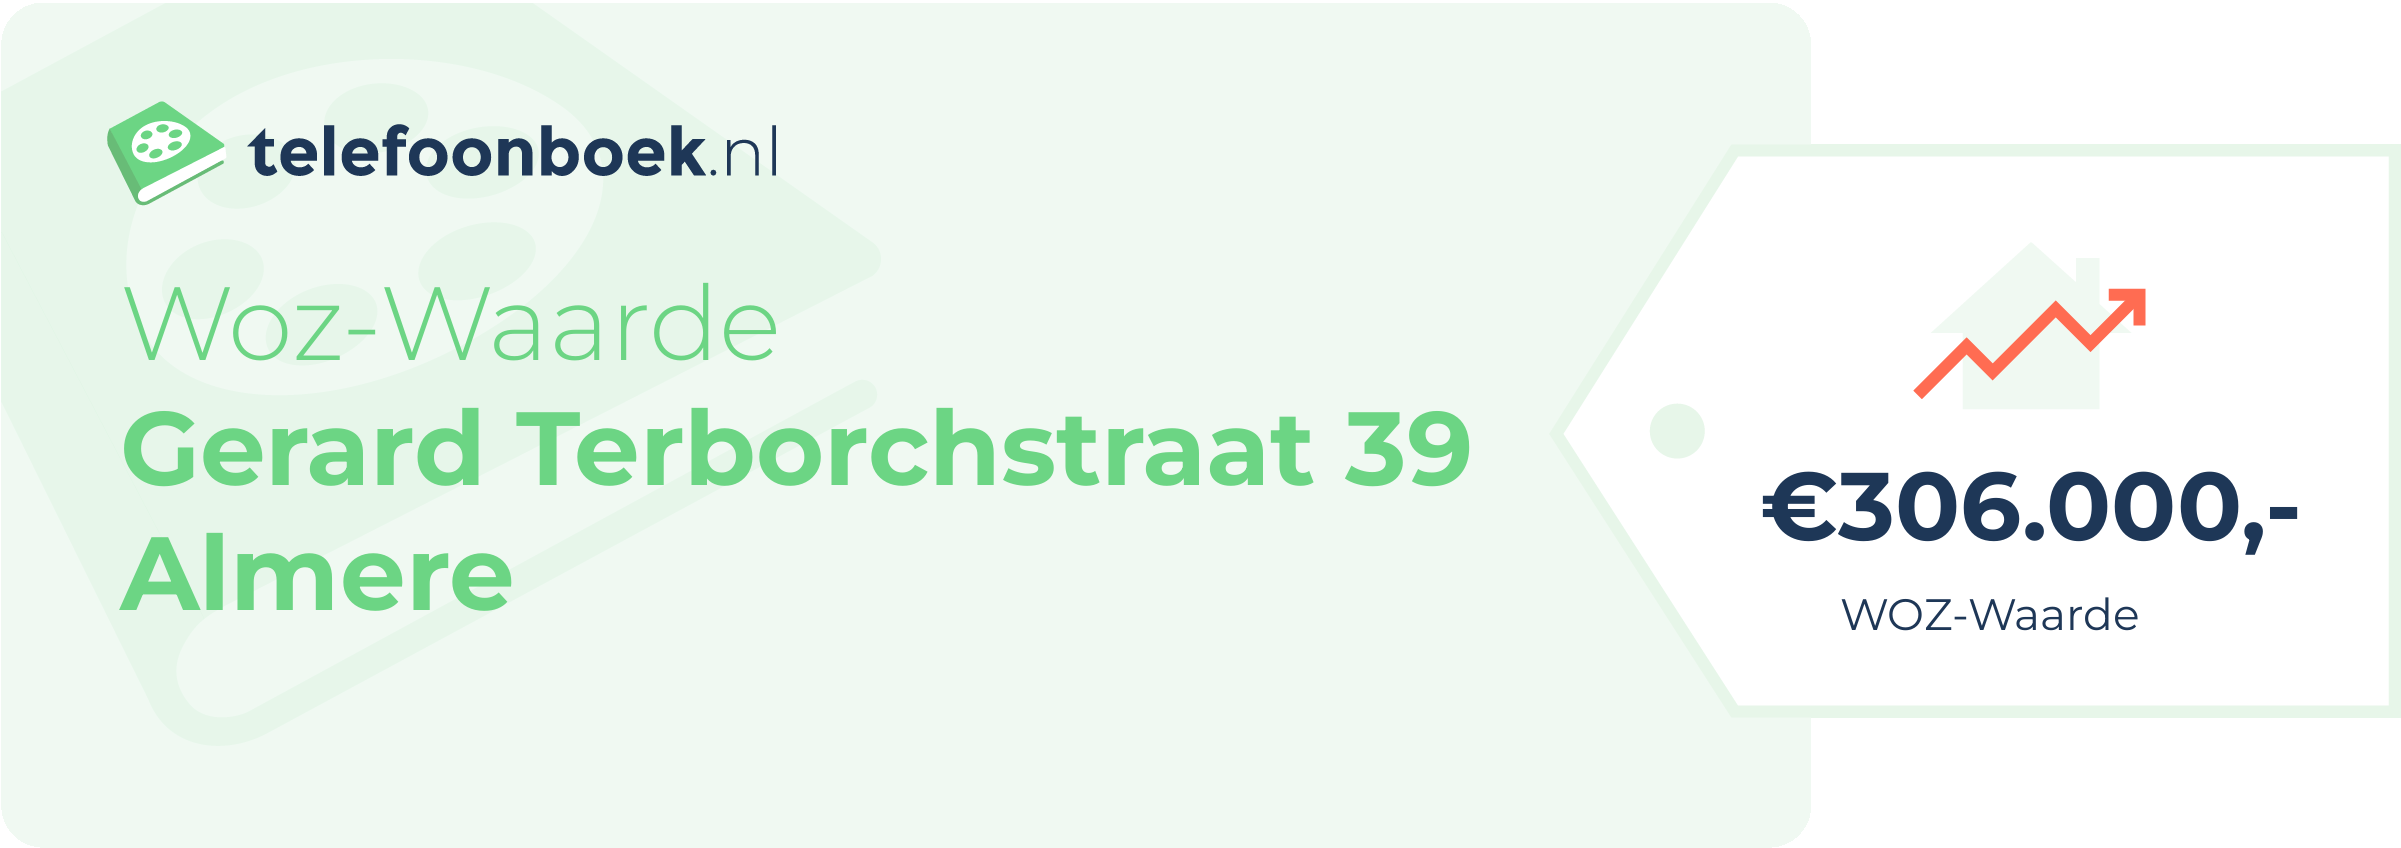 WOZ-waarde Gerard Terborchstraat 39 Almere